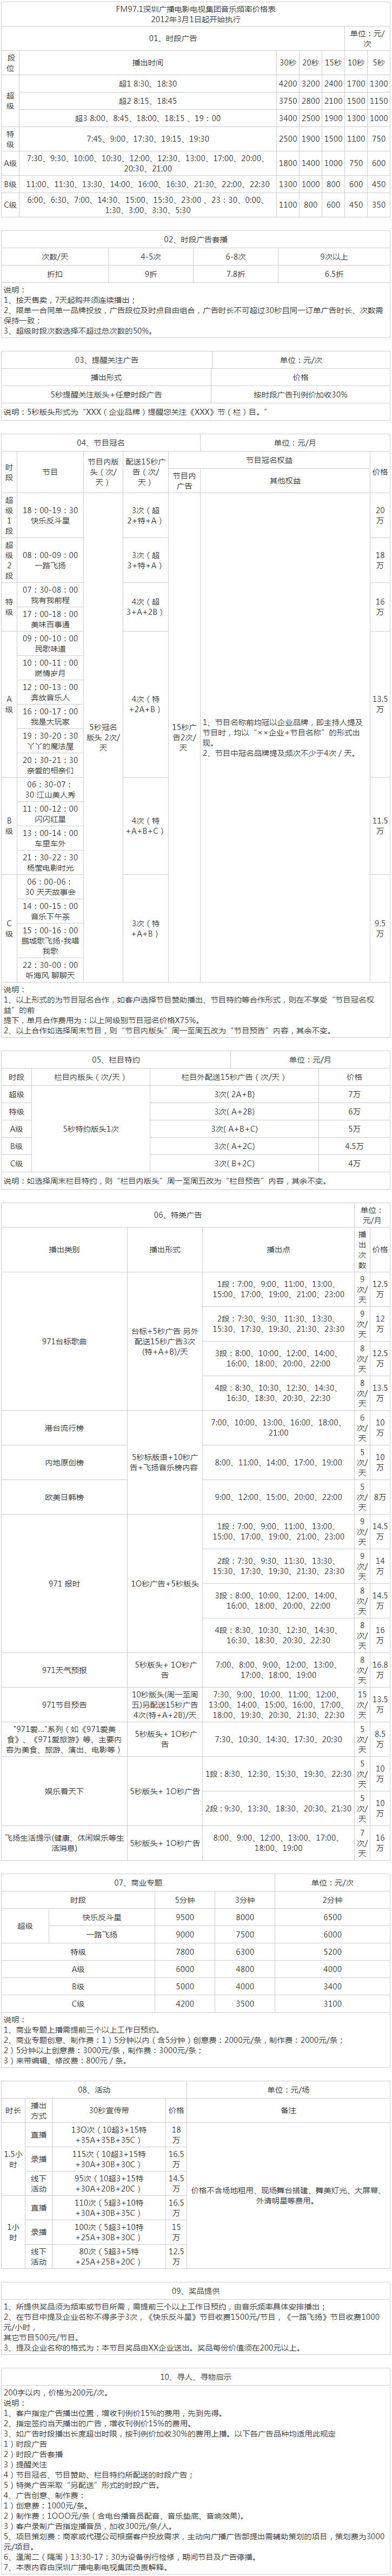 2012深圳人民广播电台音乐频率 FM97.1广告报价表.png